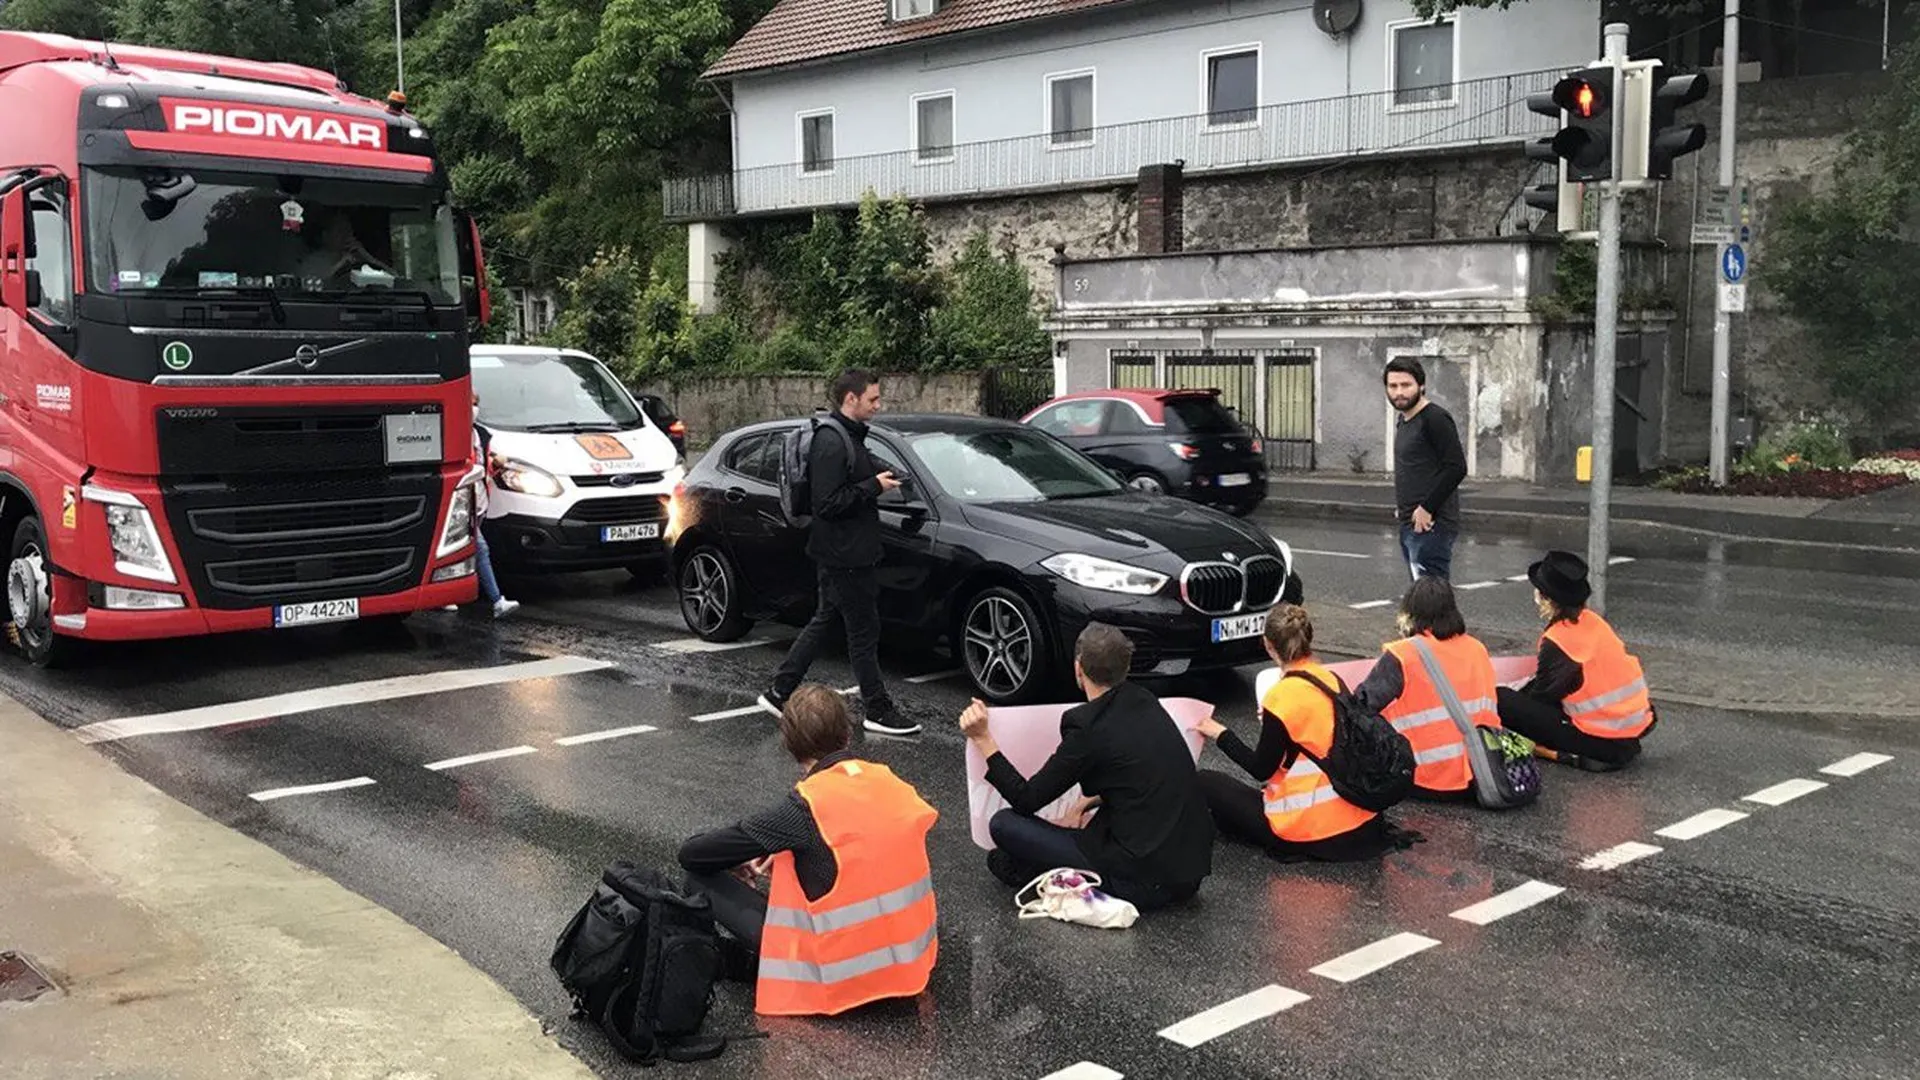 Активисты блокируют дорогу в Германии